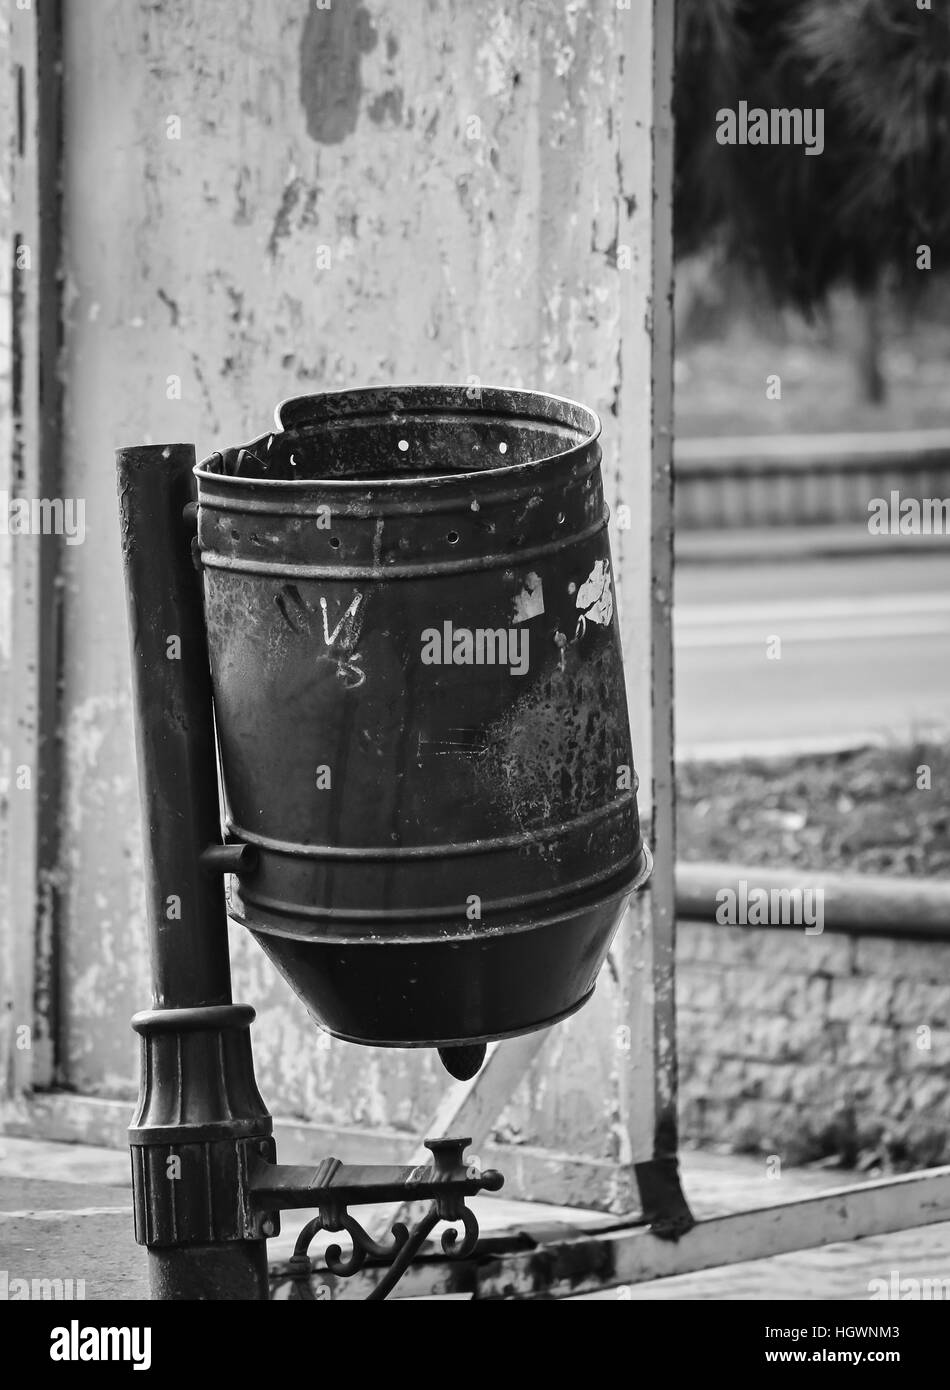 Metall Mülleimer auf der Straße in schwarzen und weißen Farben Stockfoto